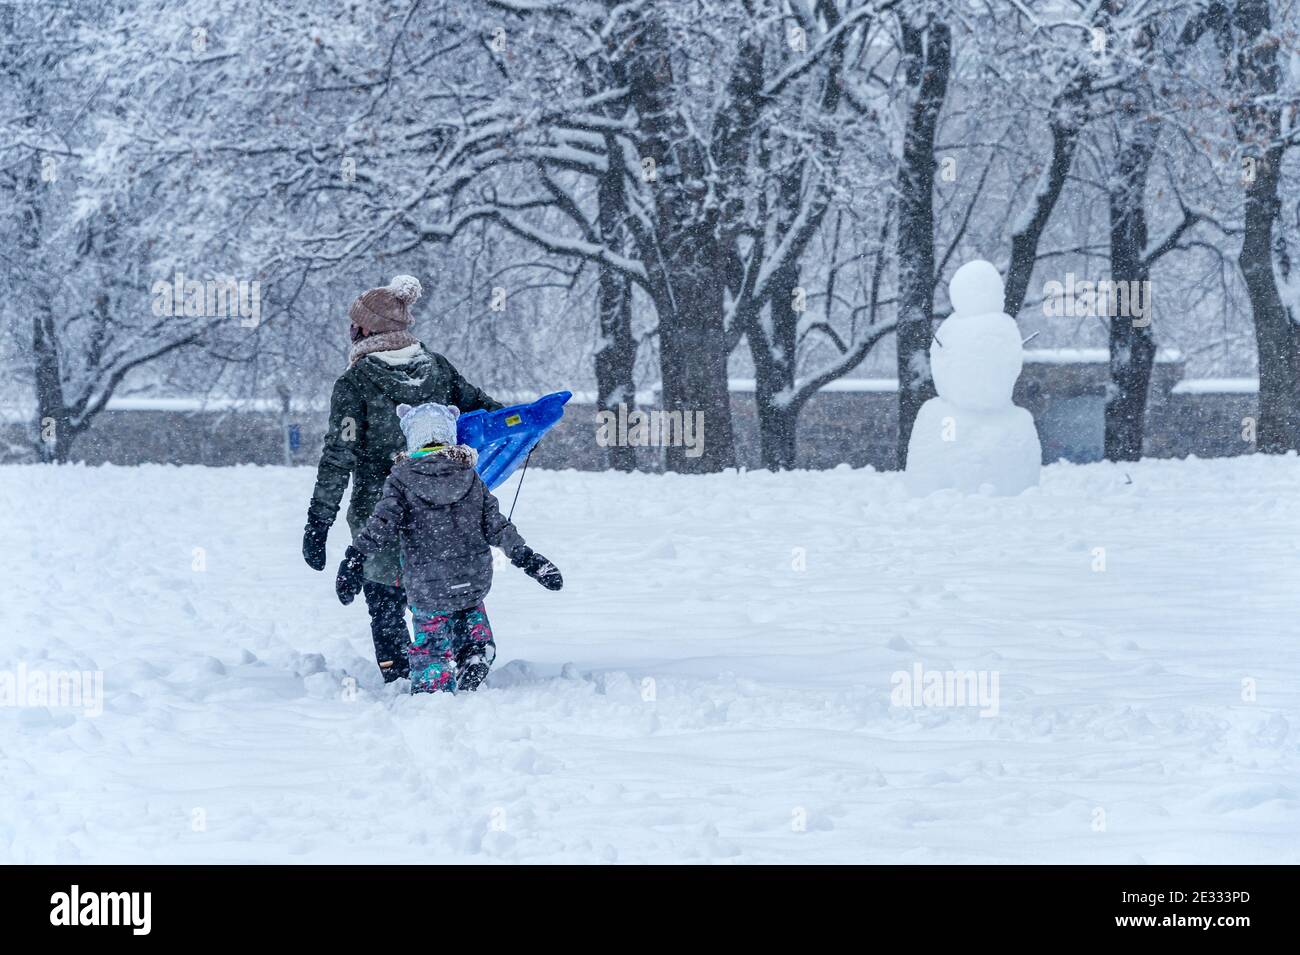 Montreal, QC, Canada - 16 Gennaio 2021: Madre e bambino camminano nel parco Jeanne-Mance durante la tempesta di neve. Foto Stock